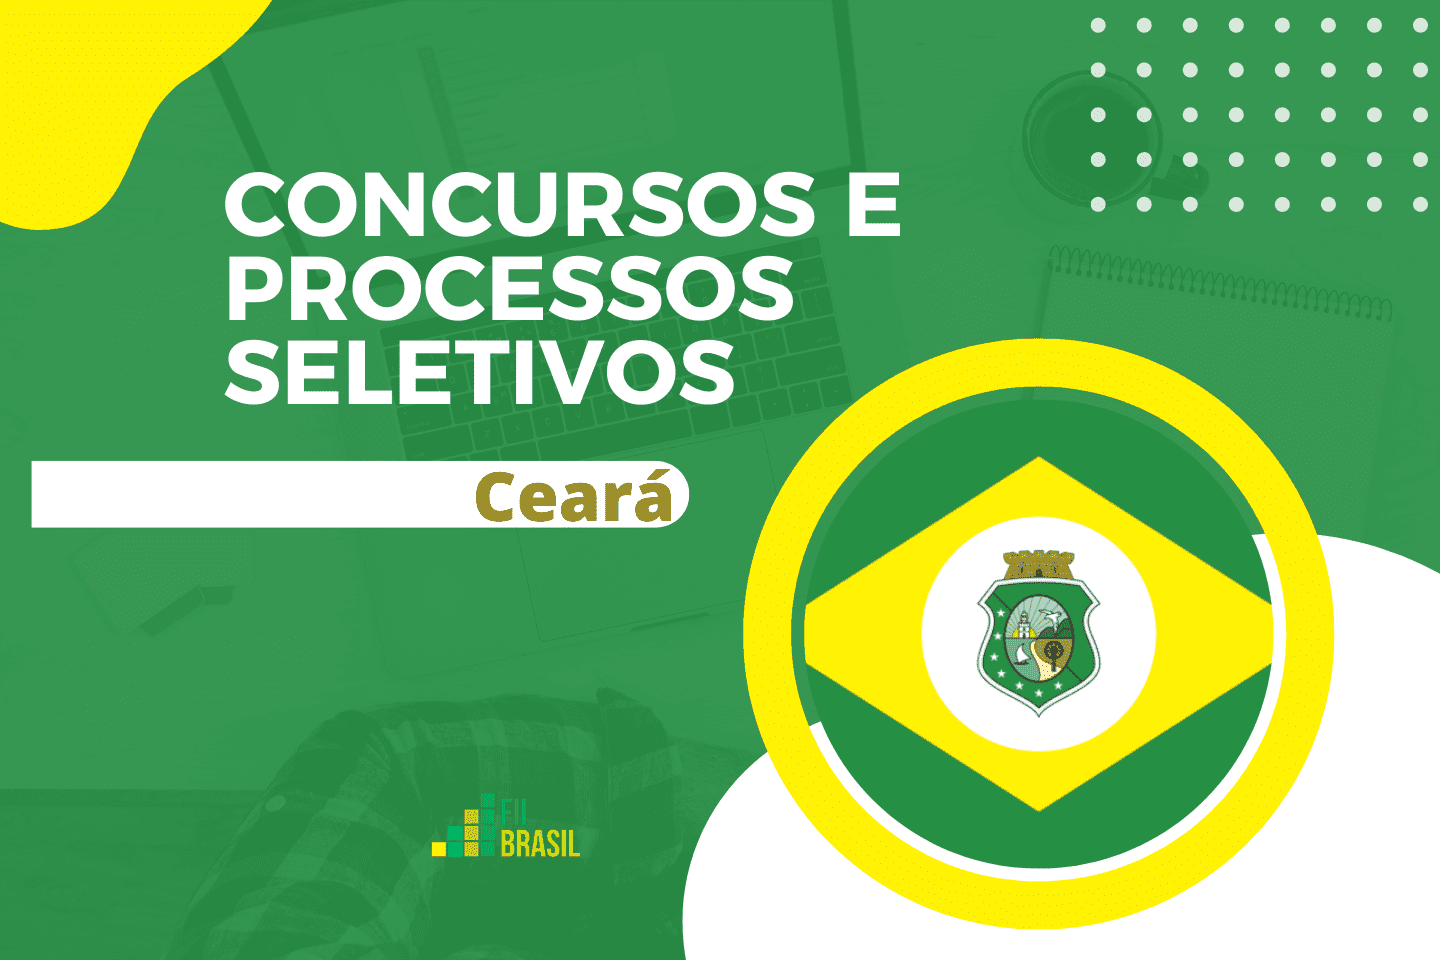 História e Geografia do Ceará para provas e concur